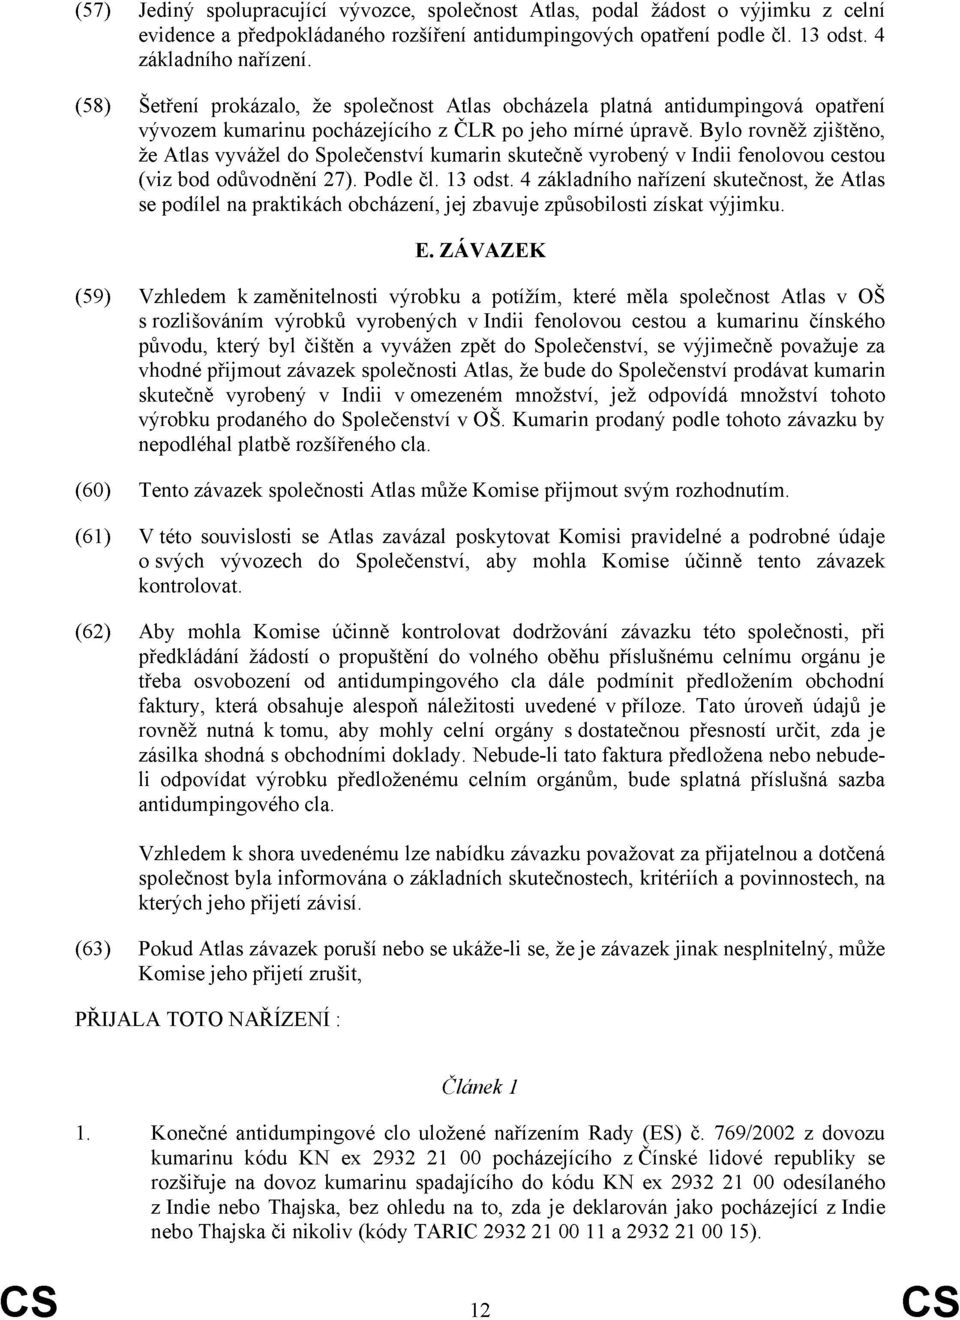 Bylo rovněž zjištěno, že Atlas vyvážel do Společenství kumarin skutečně vyrobený v Indii fenolovou ctou (viz bod odůvodnění 27). Podle čl. 13 odst.